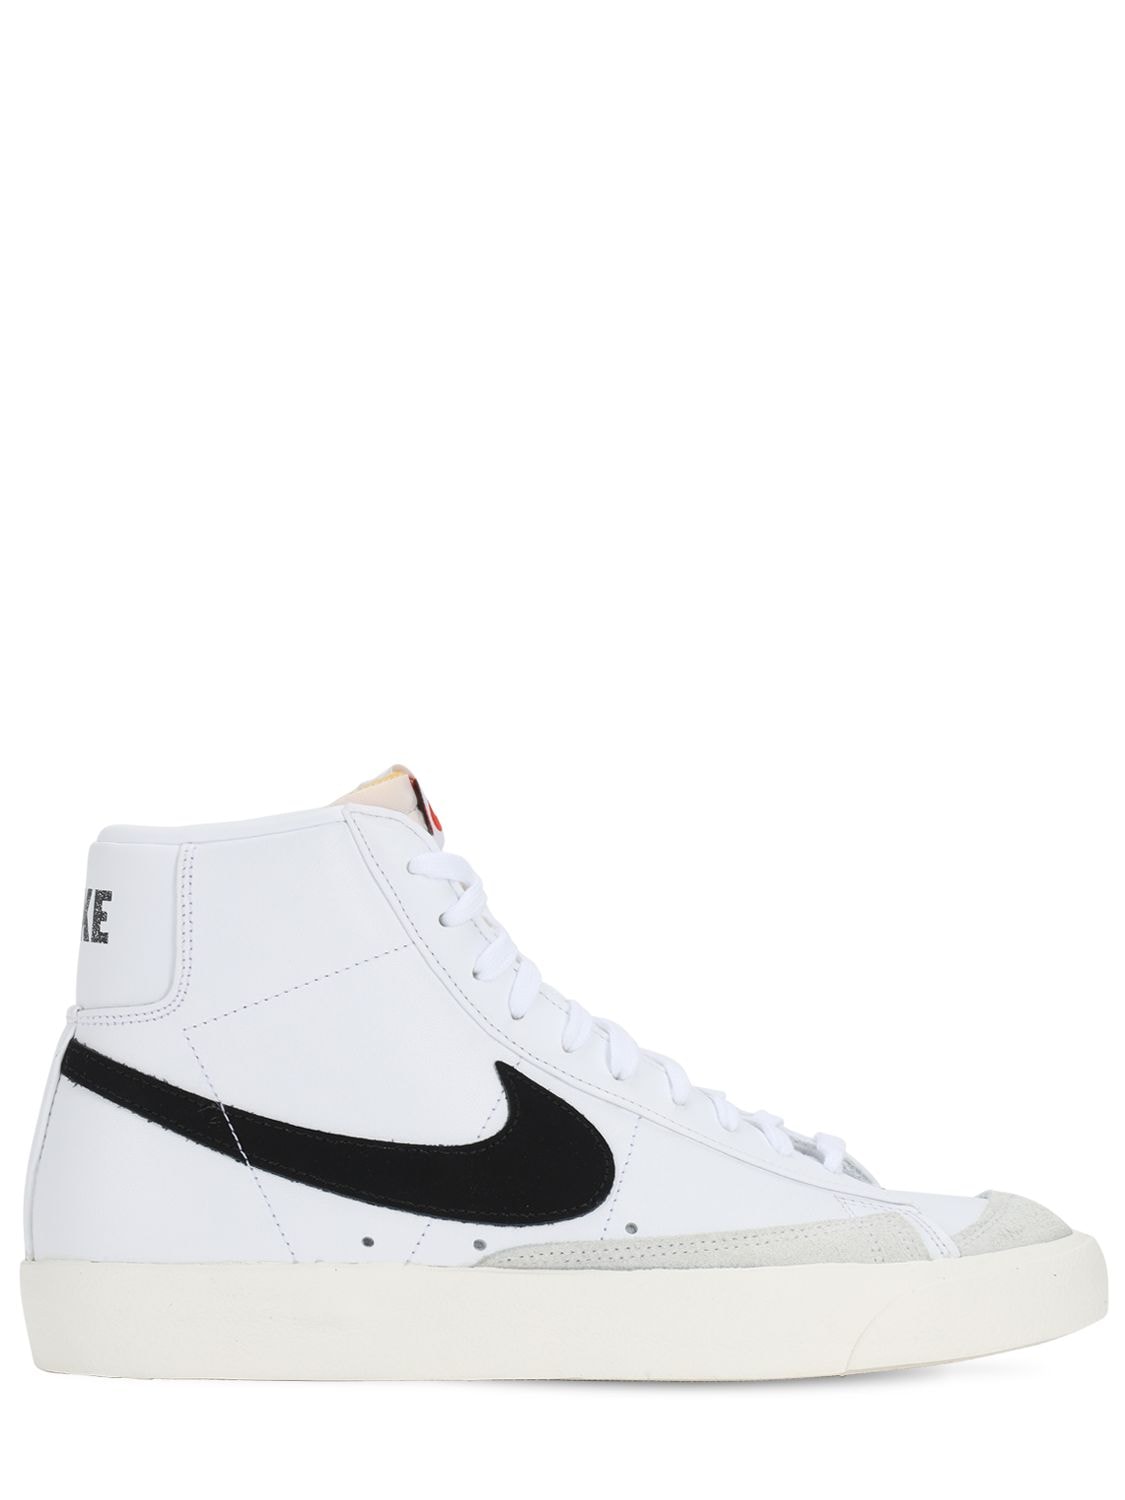 Nike Blazer Mid '77 Vintage Sneakers In White,black